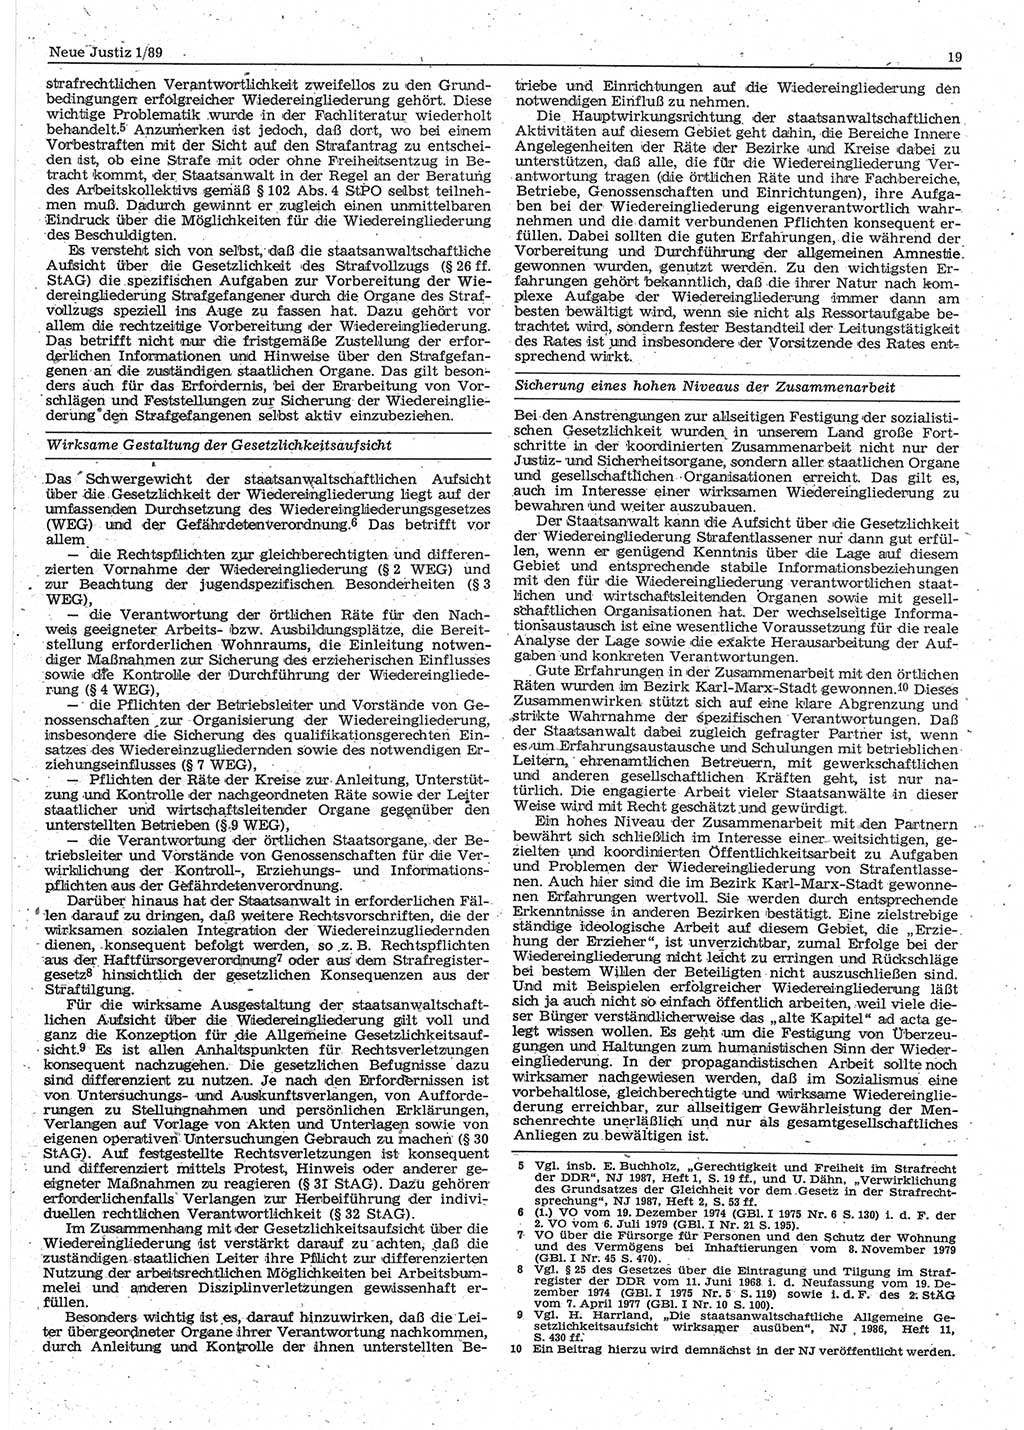 Neue Justiz (NJ), Zeitschrift für sozialistisches Recht und Gesetzlichkeit [Deutsche Demokratische Republik (DDR)], 43. Jahrgang 1989, Seite 19 (NJ DDR 1989, S. 19)